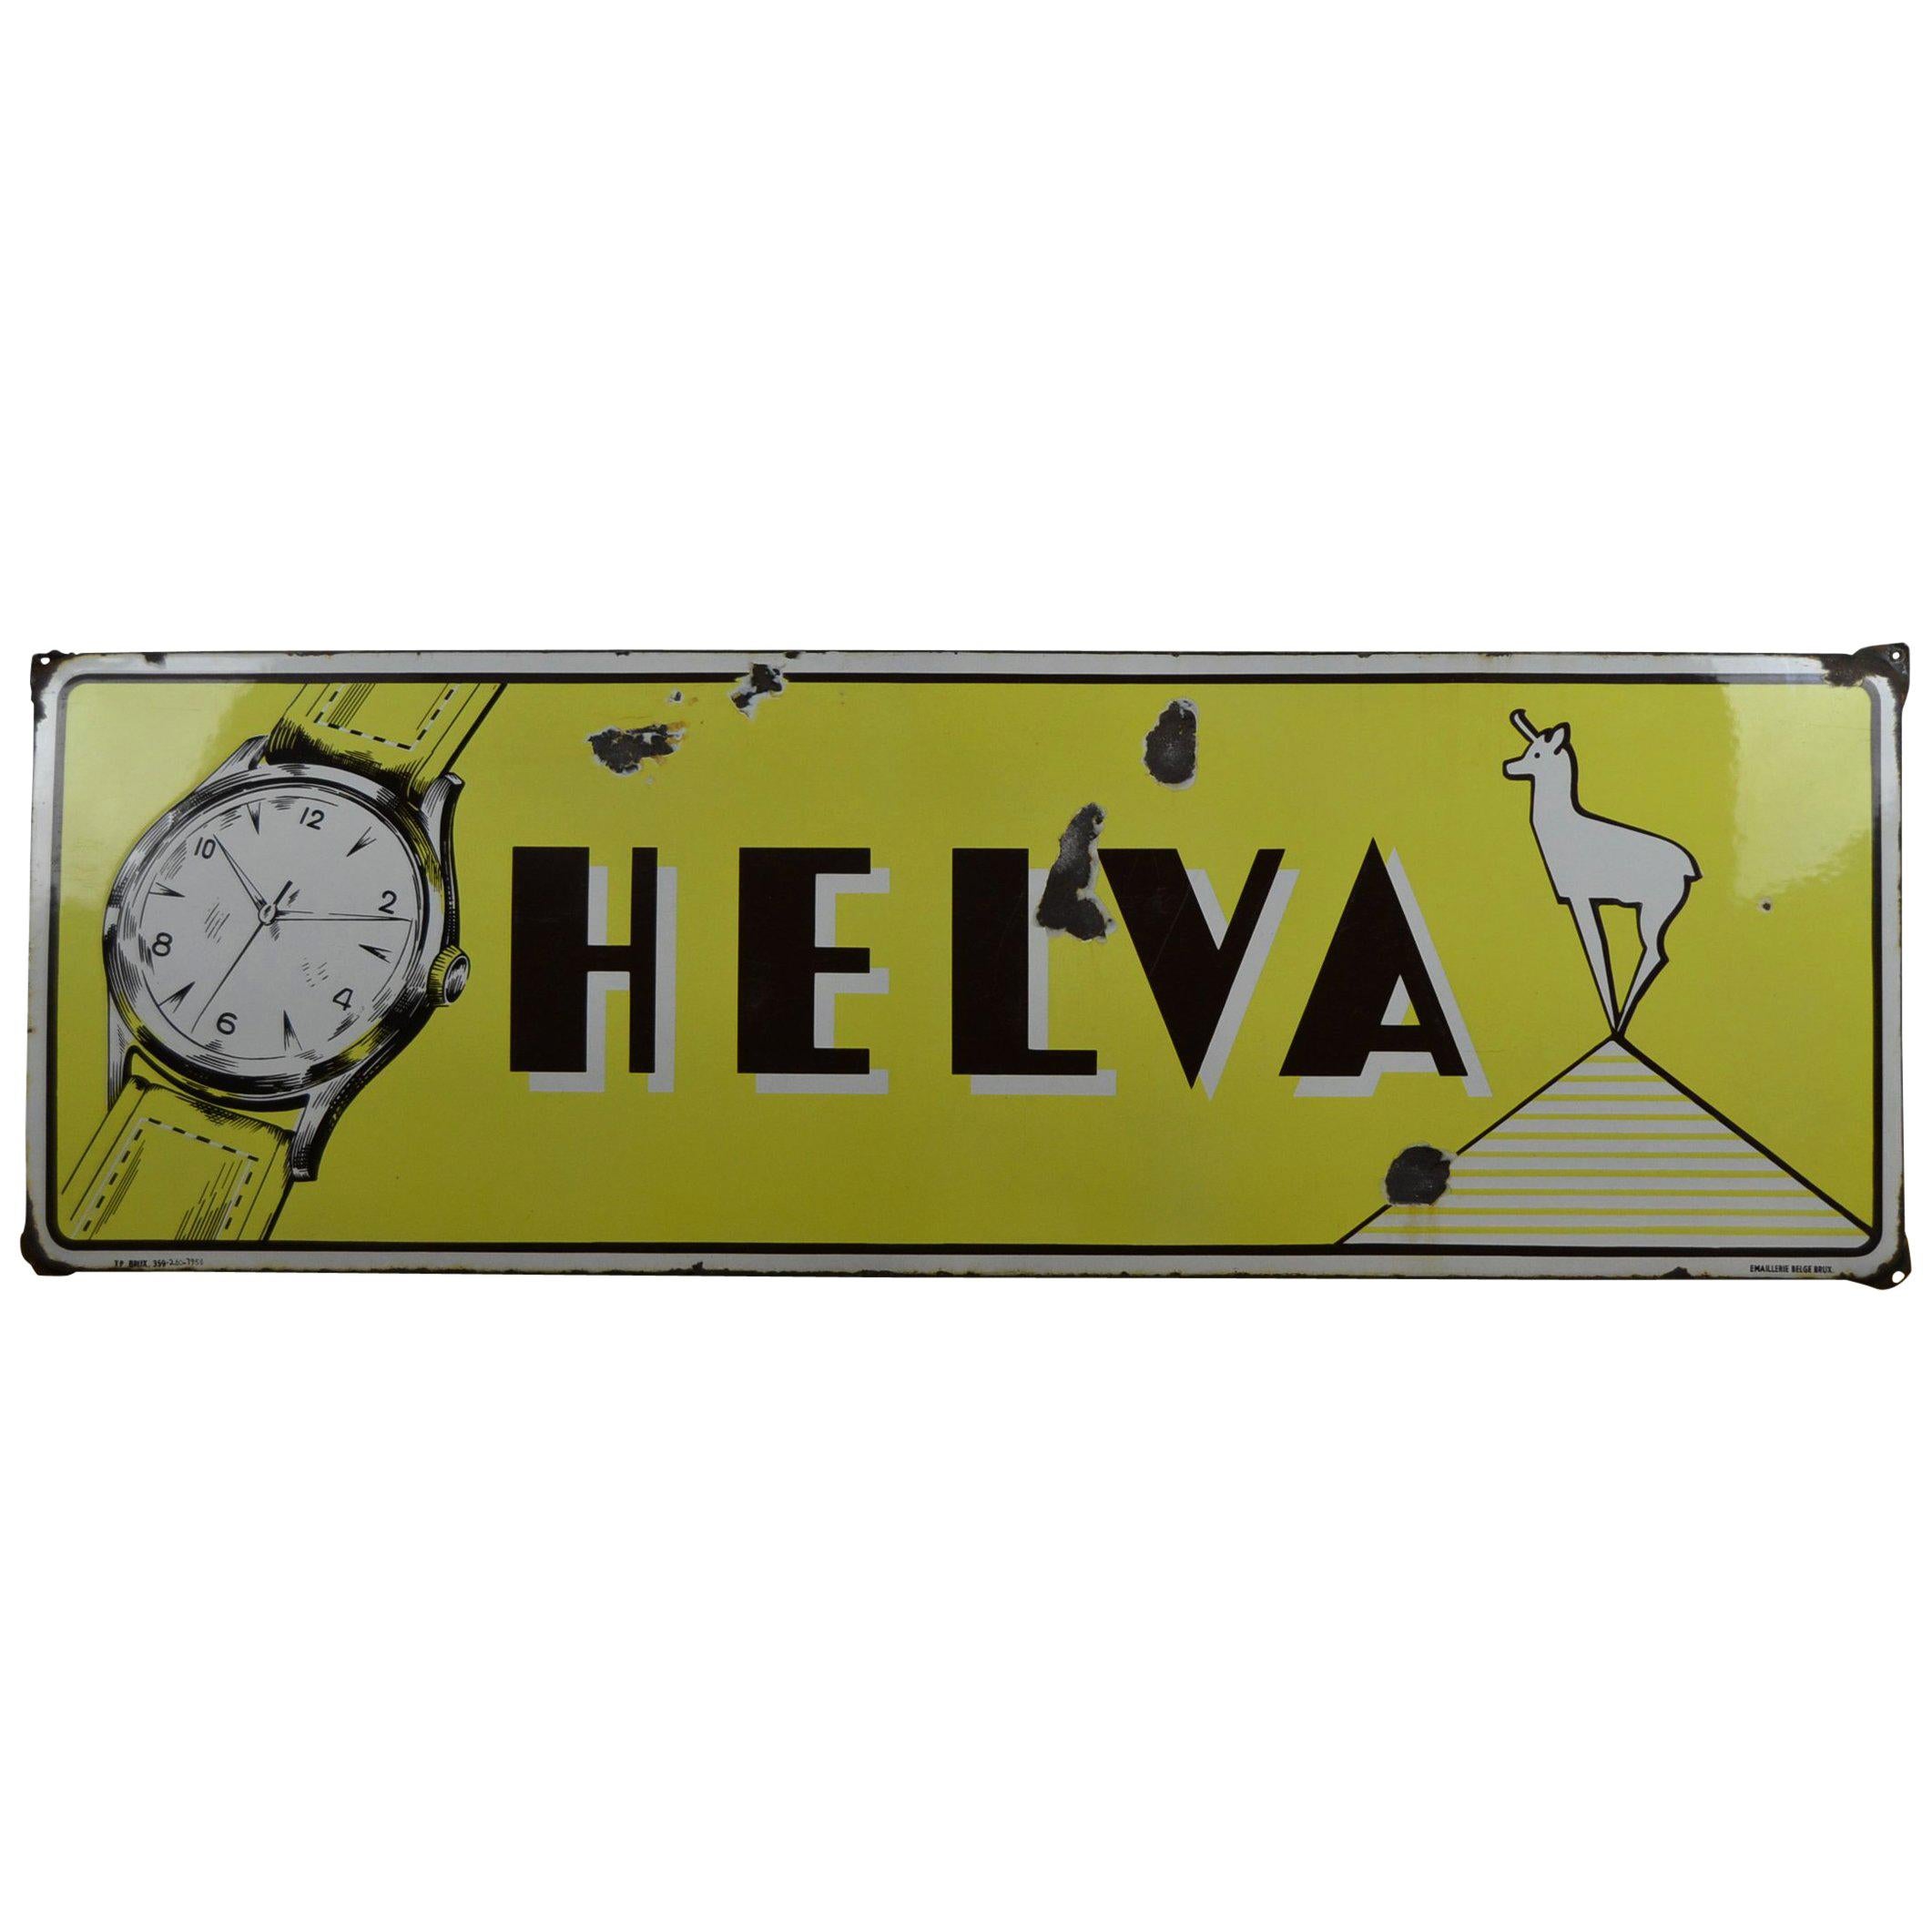 1950s Enamel Advertising Sign Helva Watches Switzerland